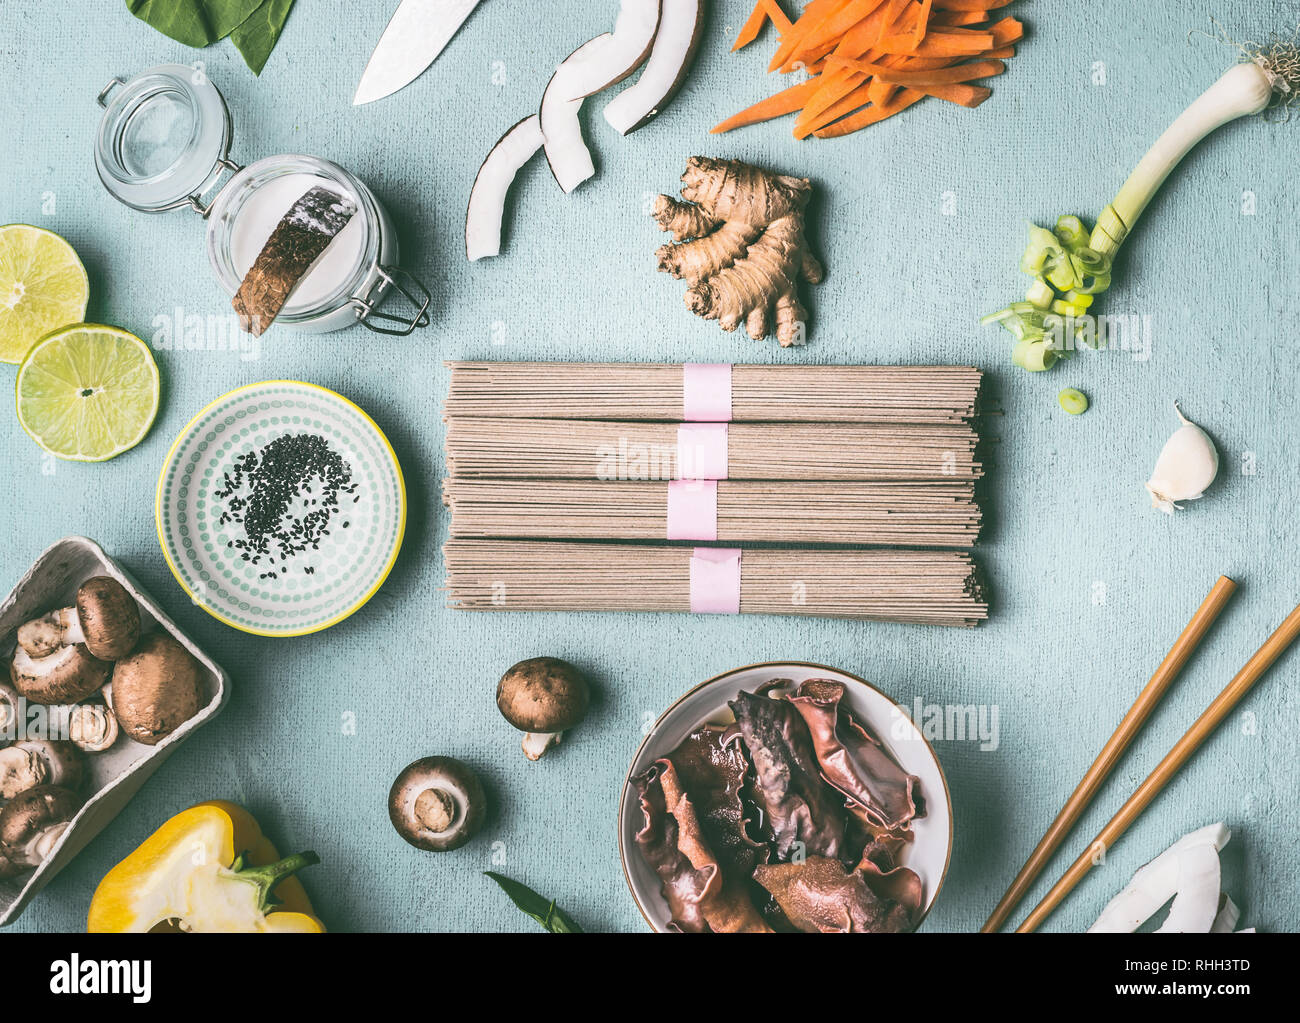 Asian ingredienti alimentari laici piatto sulla luce blu tavolo da cucina background: tagliatelle, verdure, funghi e spezie. Gustosa cucina vegana e mangiare. Mento Foto Stock